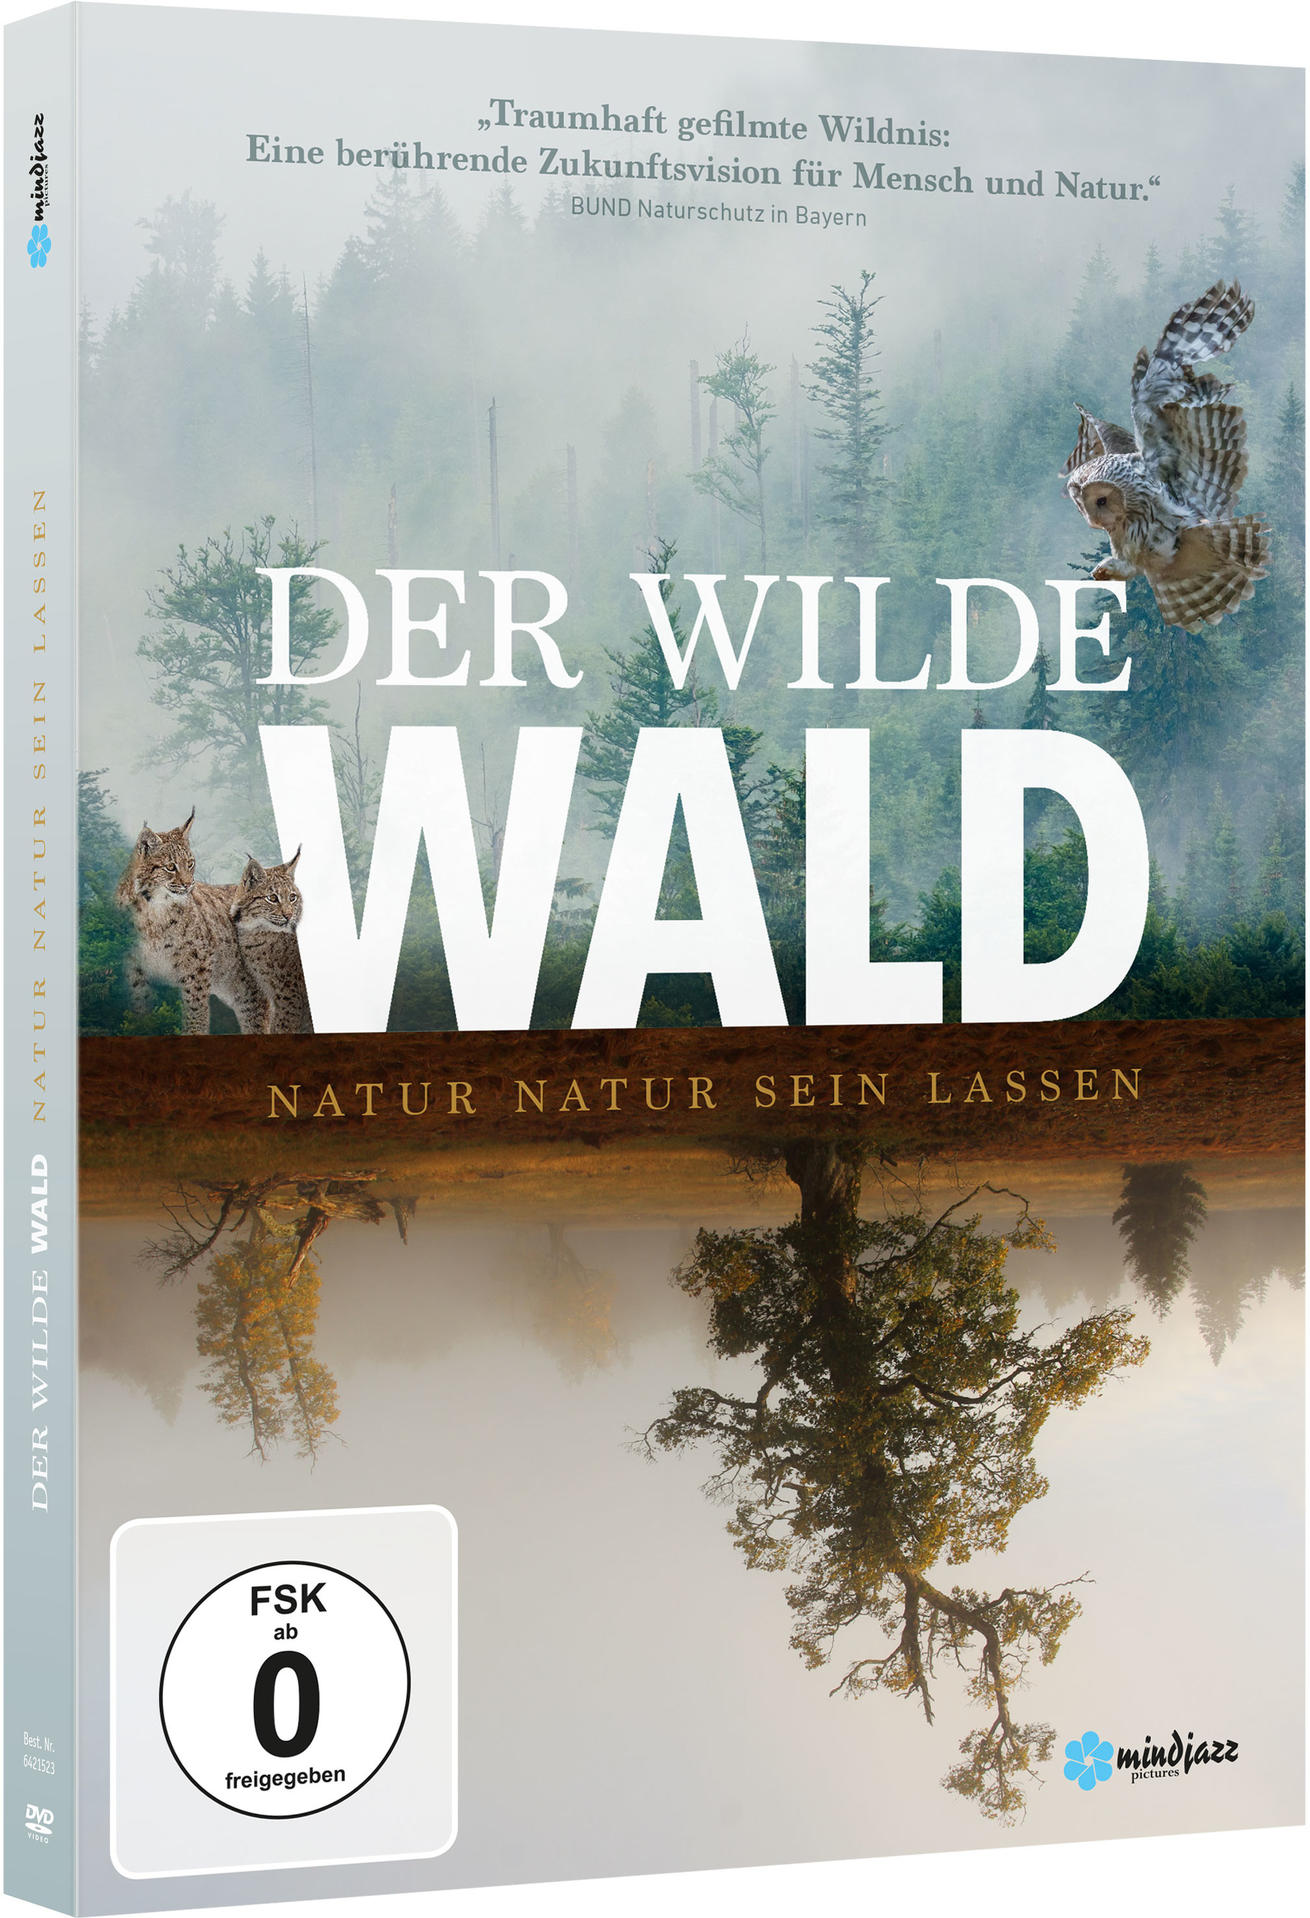 Der Wilde Wald - Natur lassen sein Natur DVD